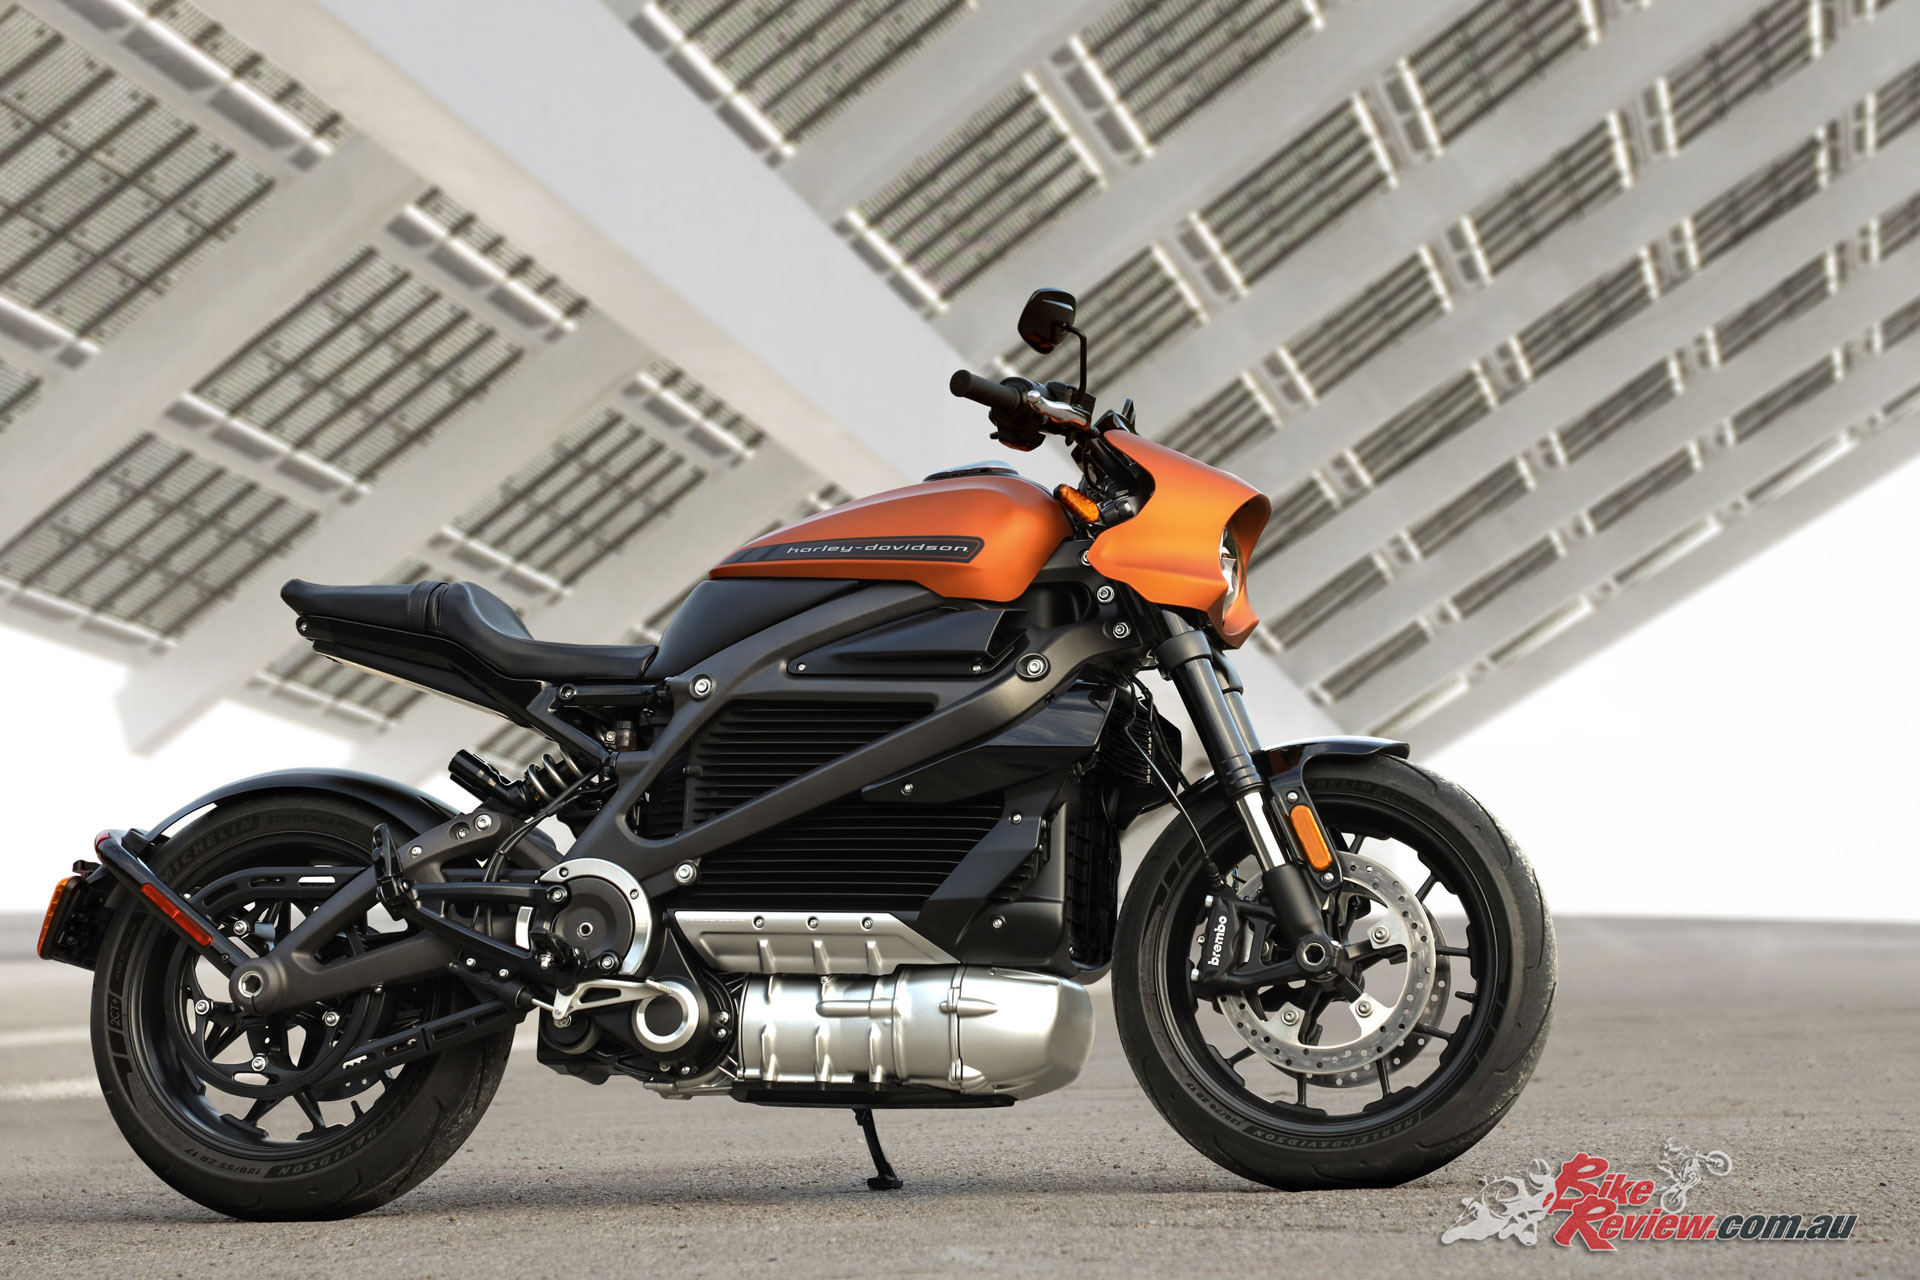 New Model Harley Davidson Livewire More Details Bike Review